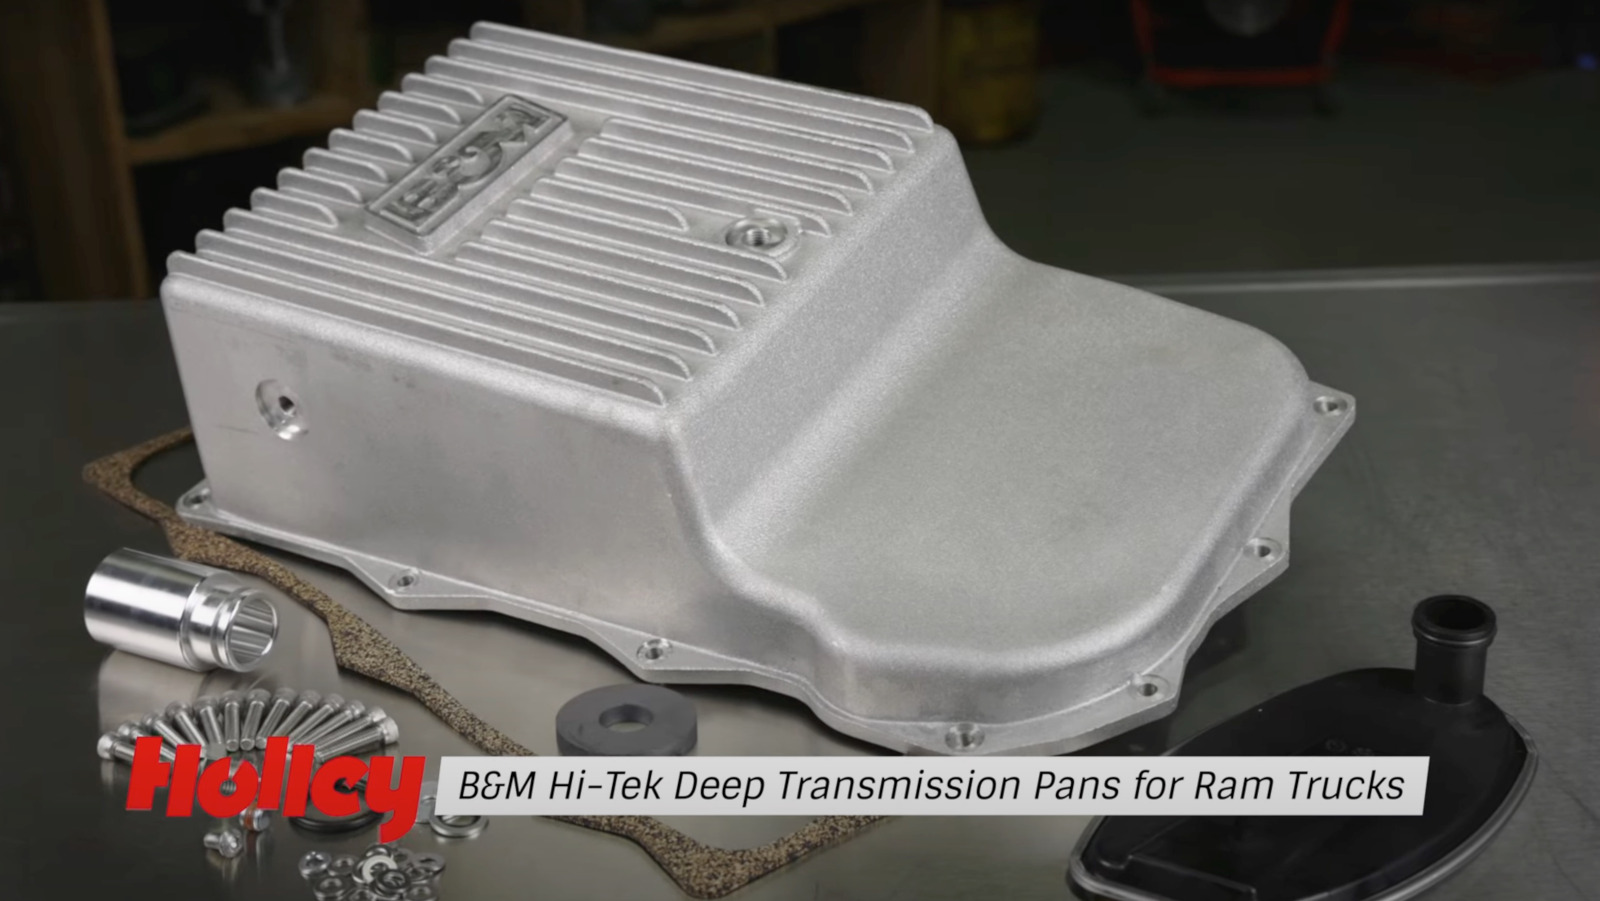 HI-TEK DEEP TRANSMISSION PANS FOR RAM TRUCKS FROM B&M